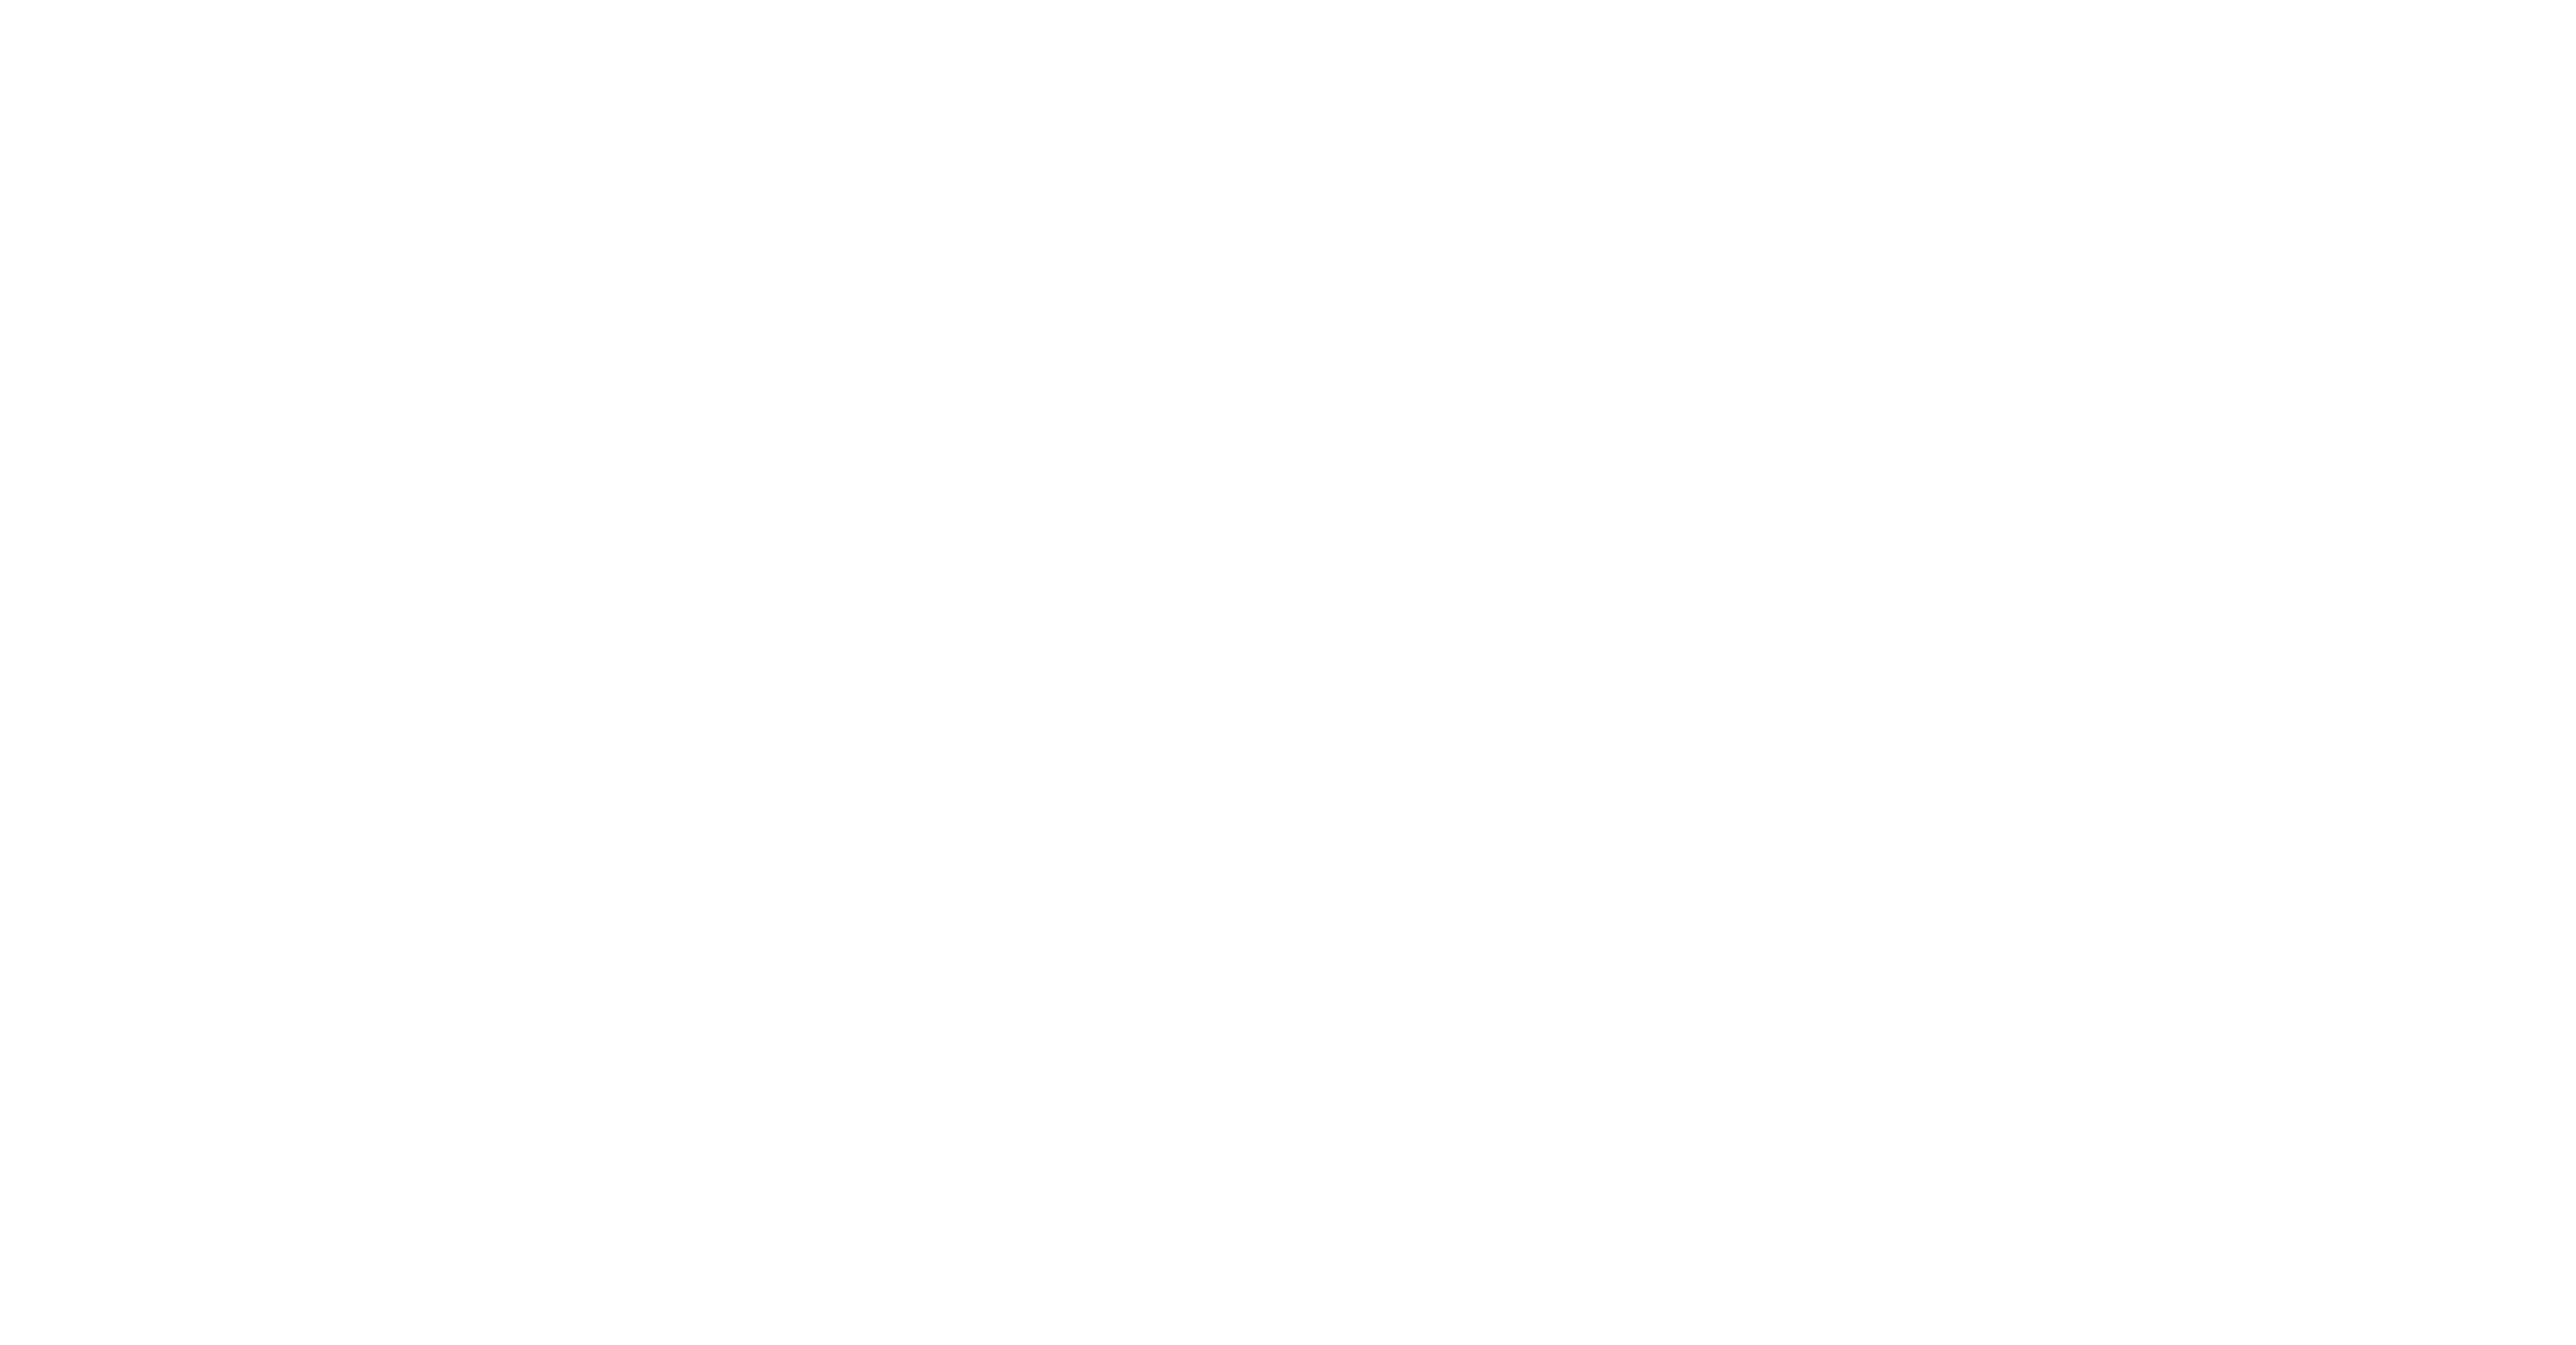 Manny's Tortas